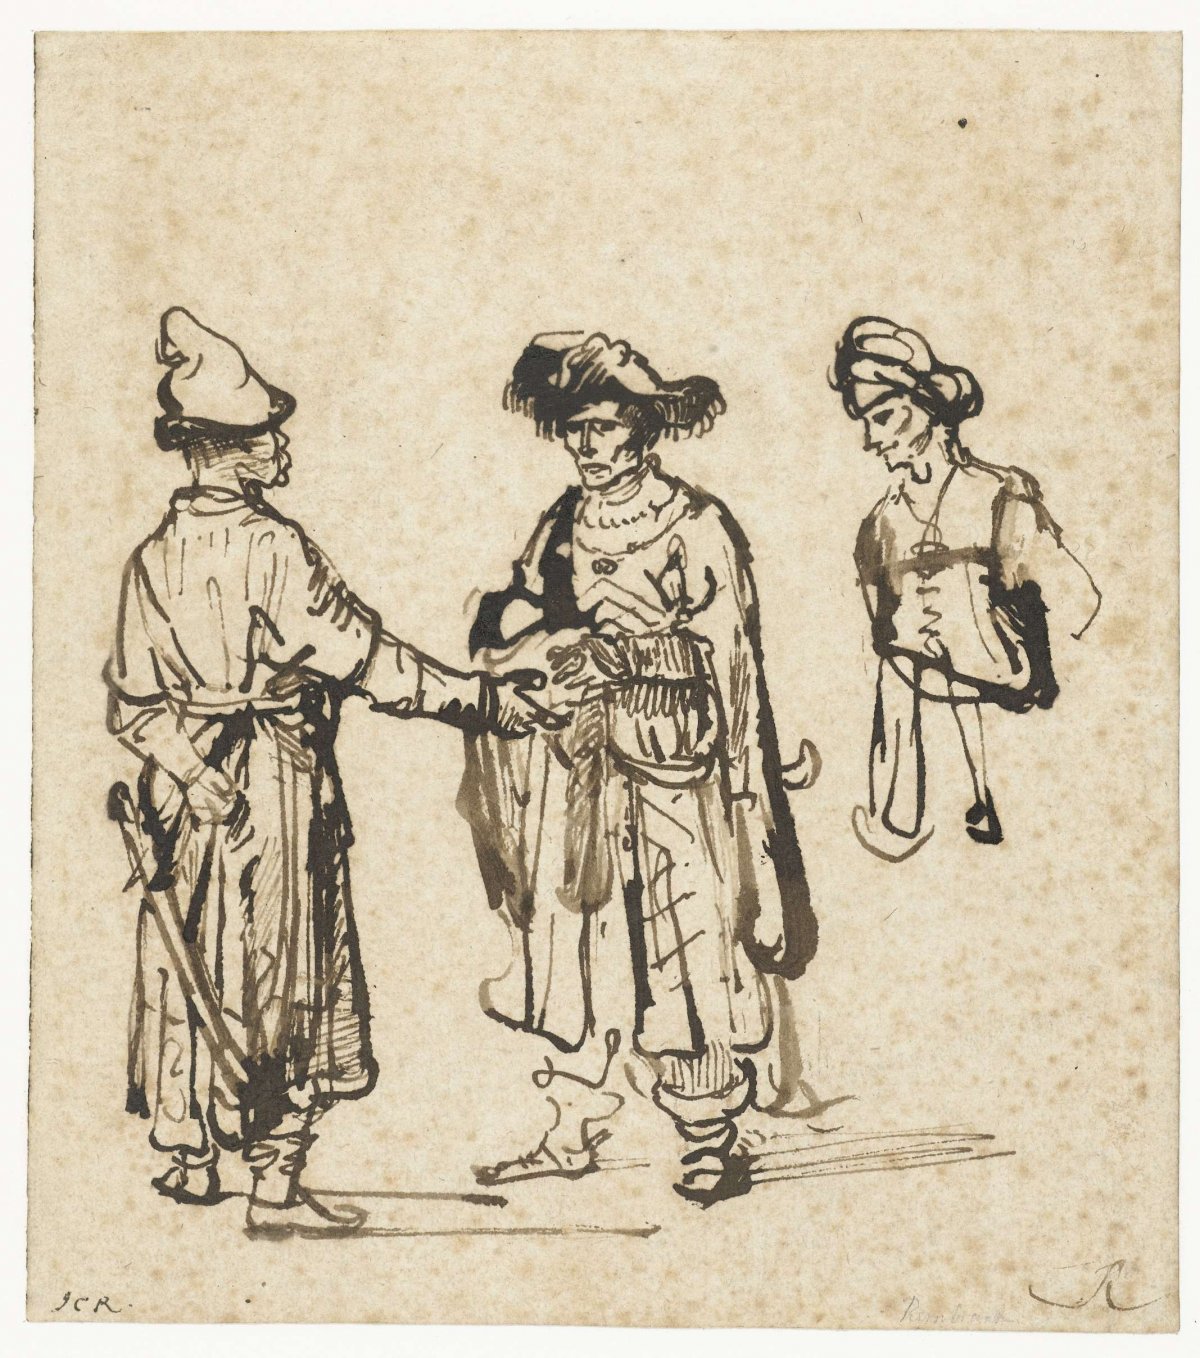 Three Orientals Conversing, Rembrandt van Rijn, c. 1645